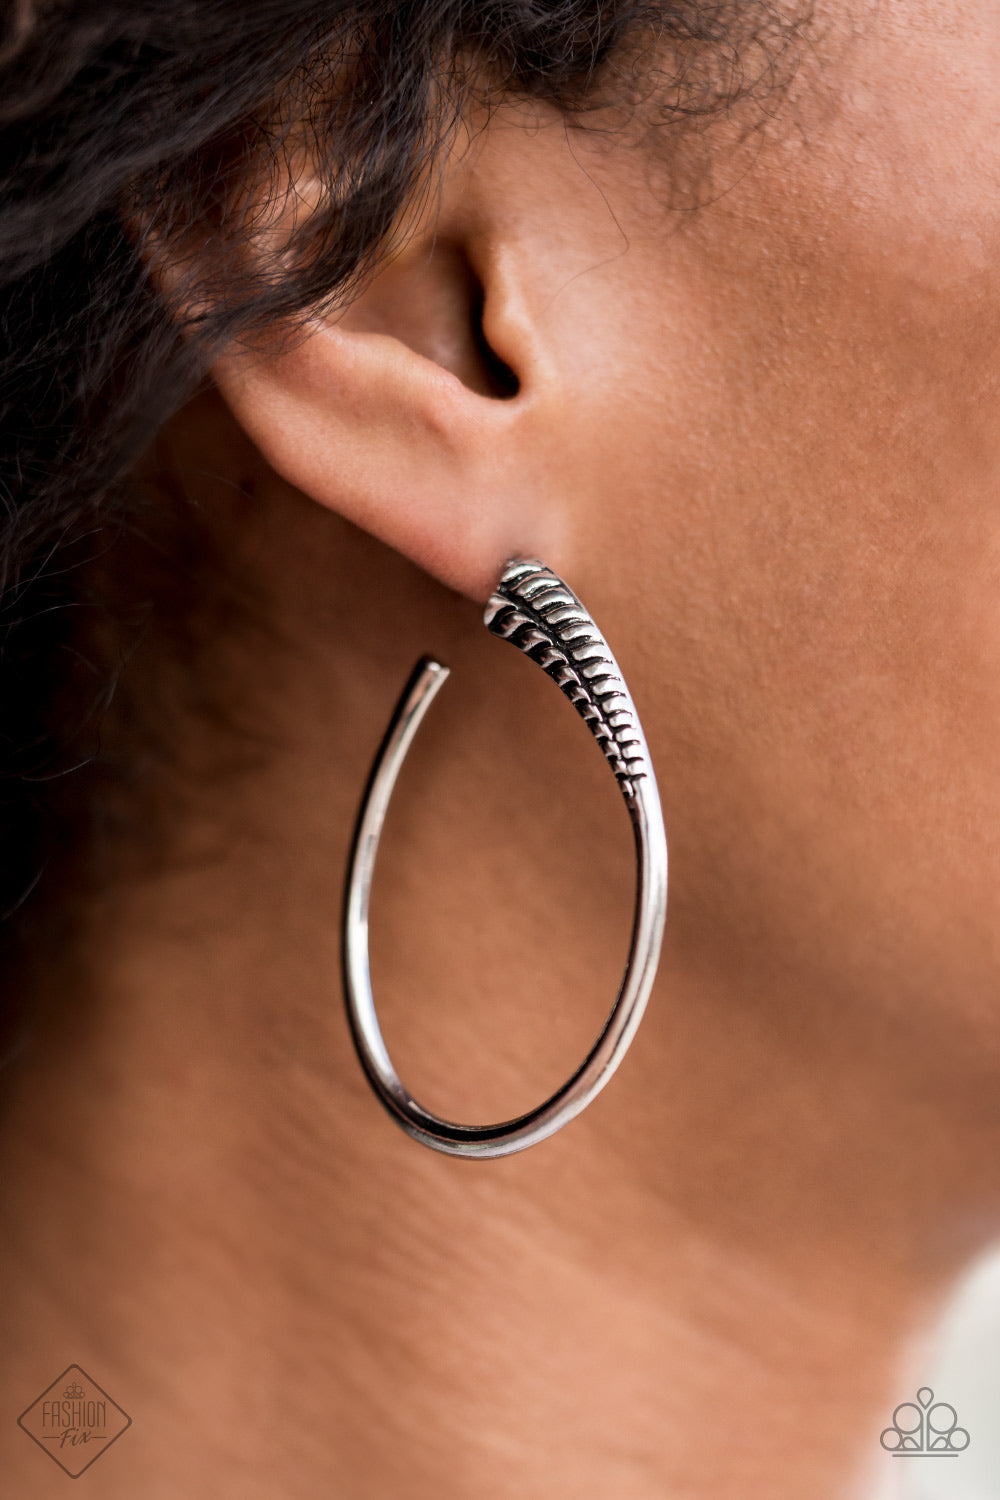 Fully Loaded Earring (Copper, Silver)